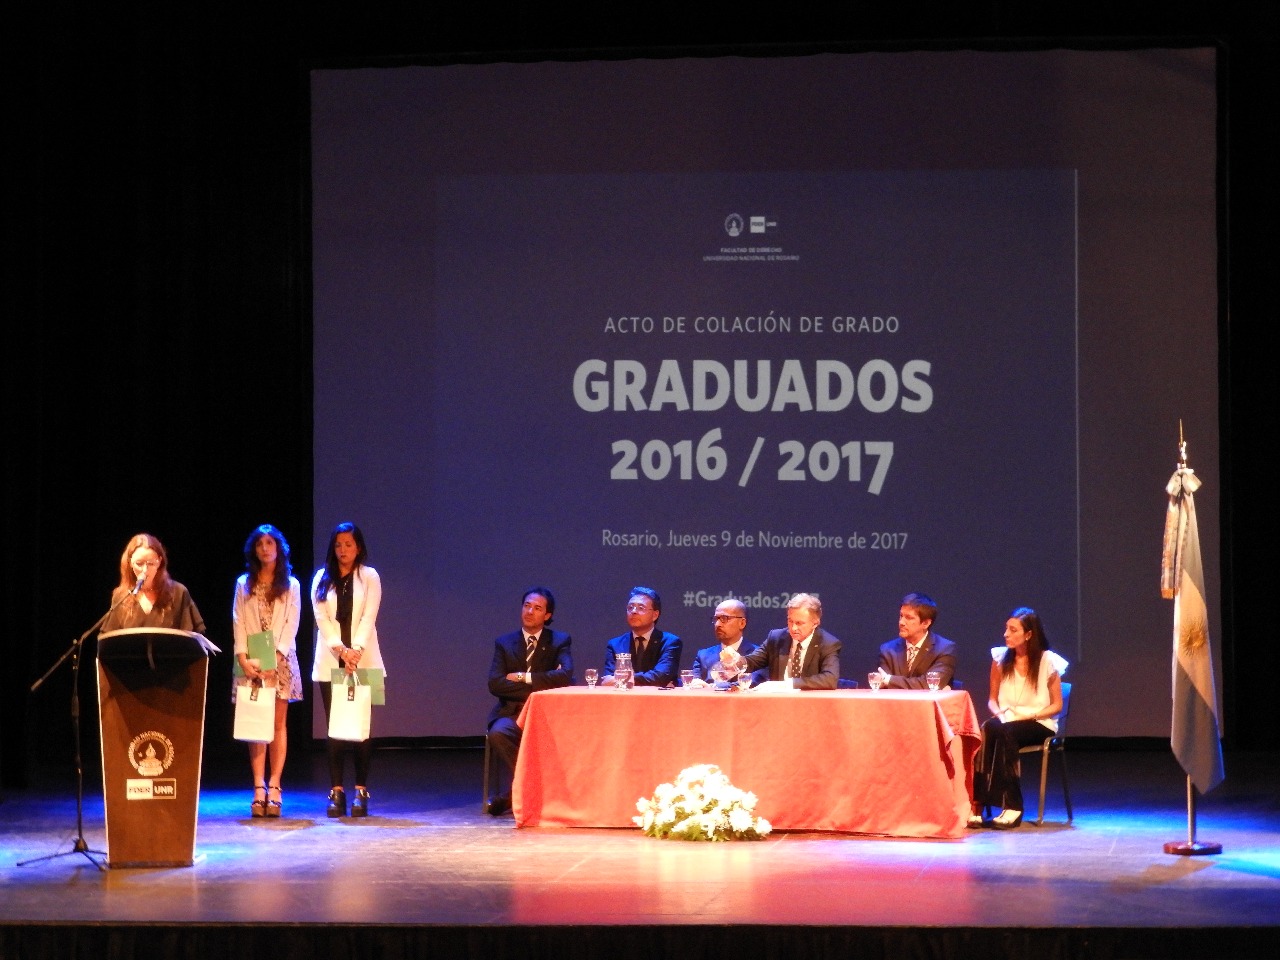 Acto de Colación de Grado – Graduados 2016-2017